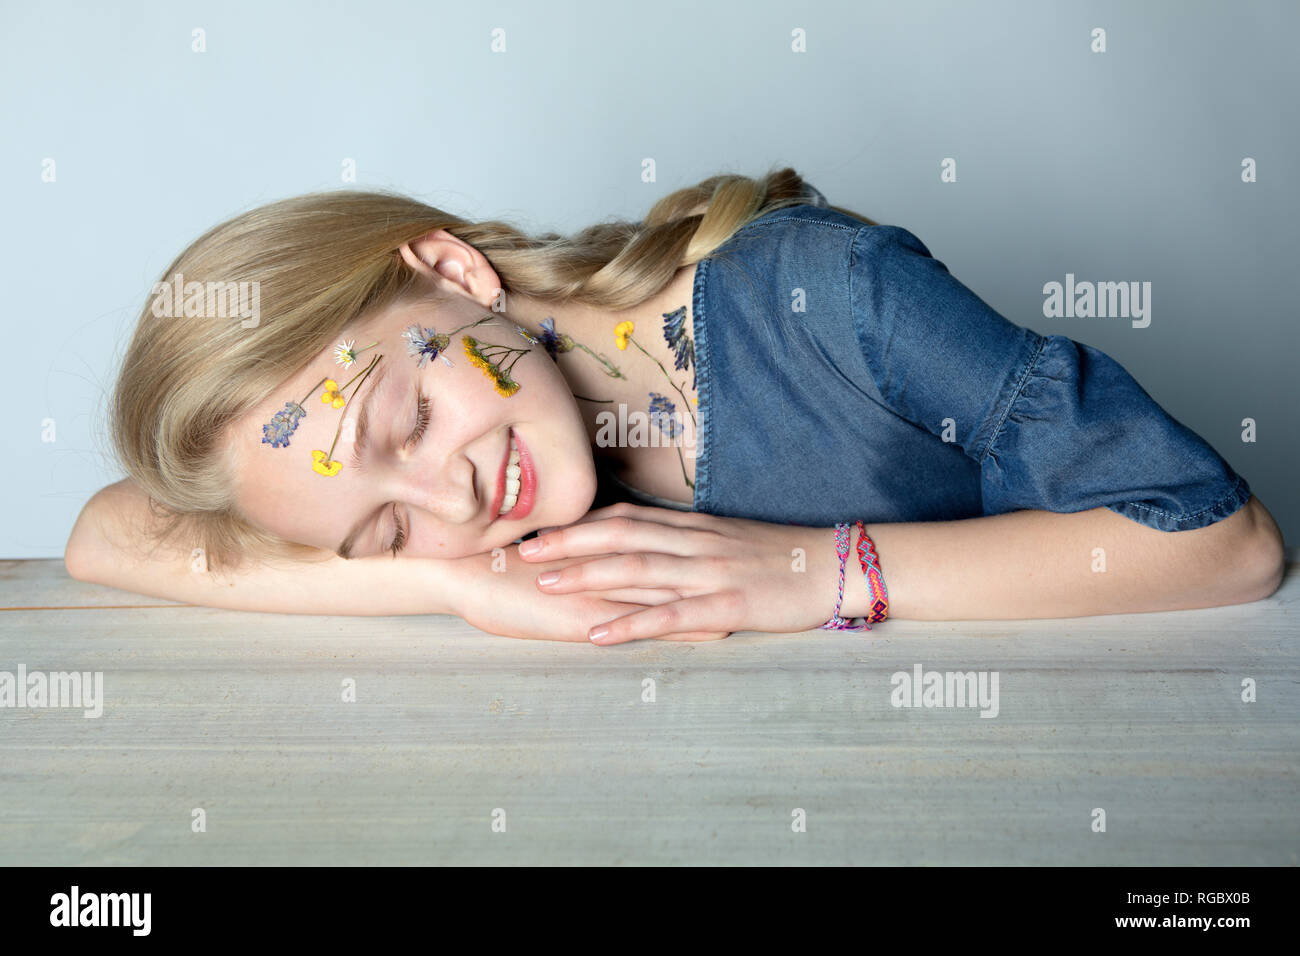 Retrato de sonriente chica rubia con tatuaje de flores presionado en su cara Foto de stock